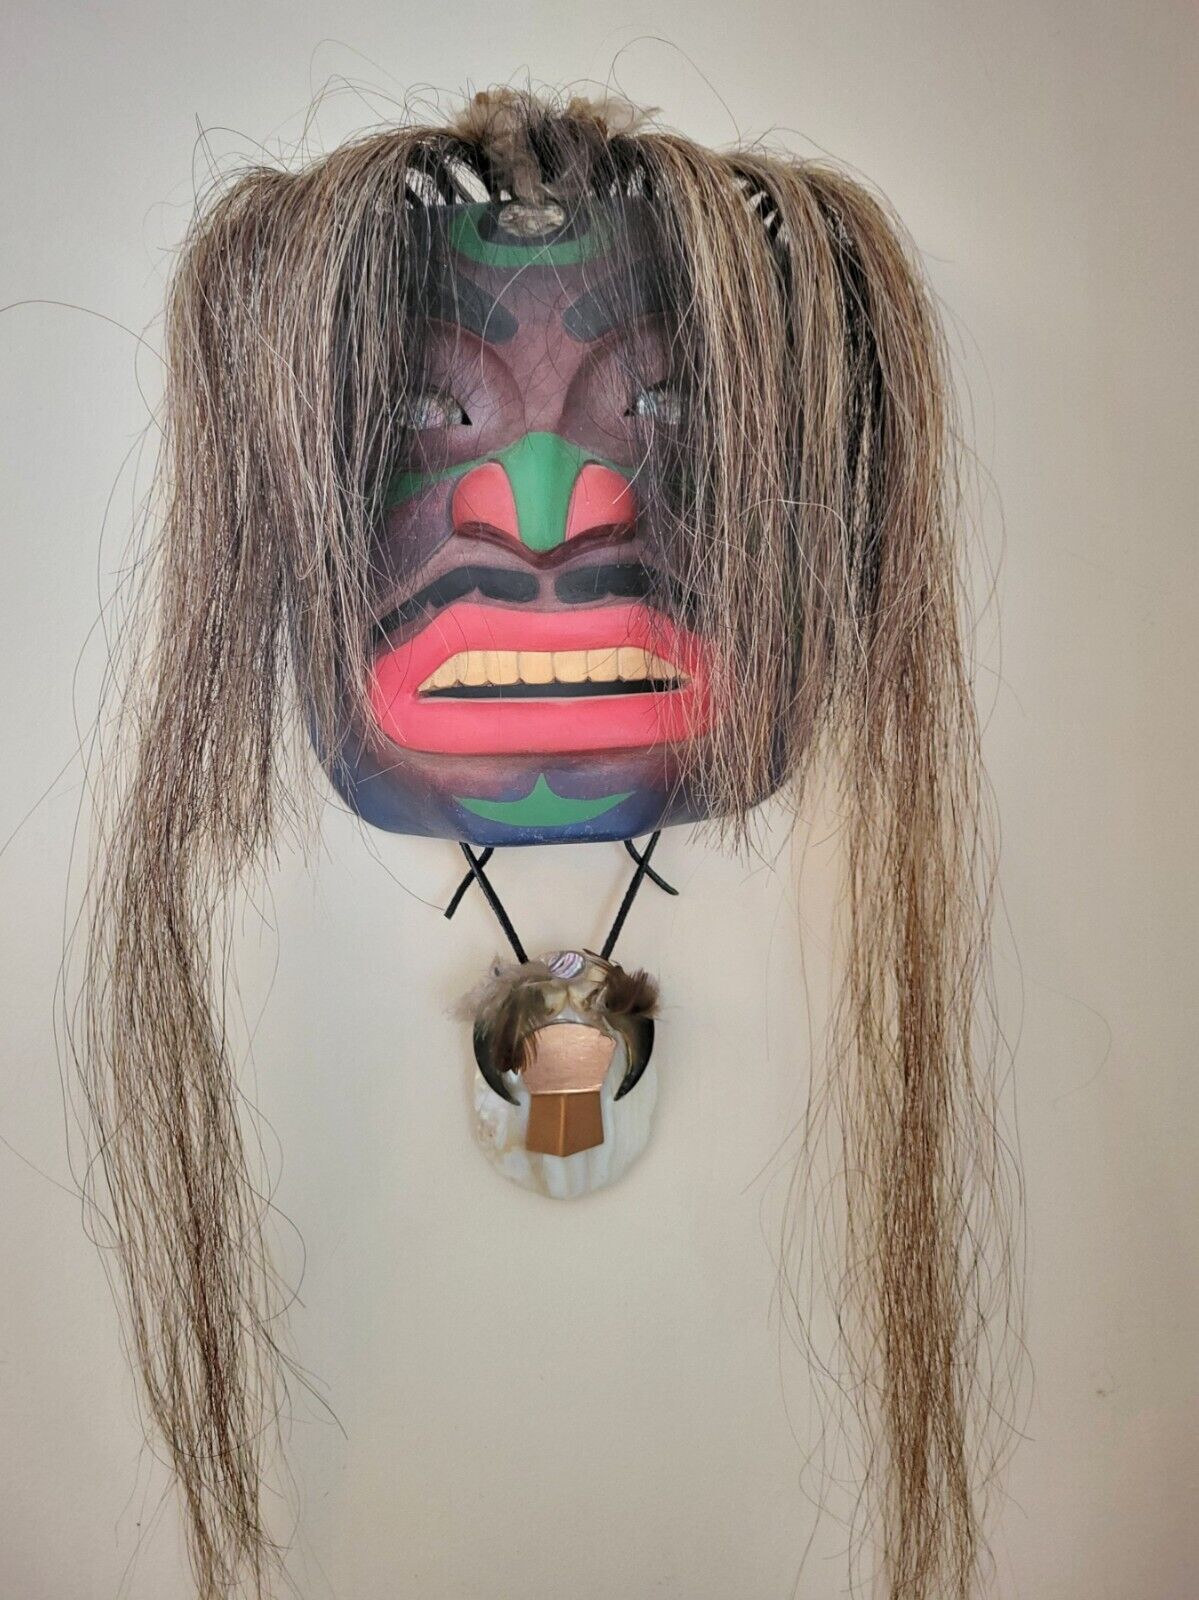 Haida Shaman portrait mask